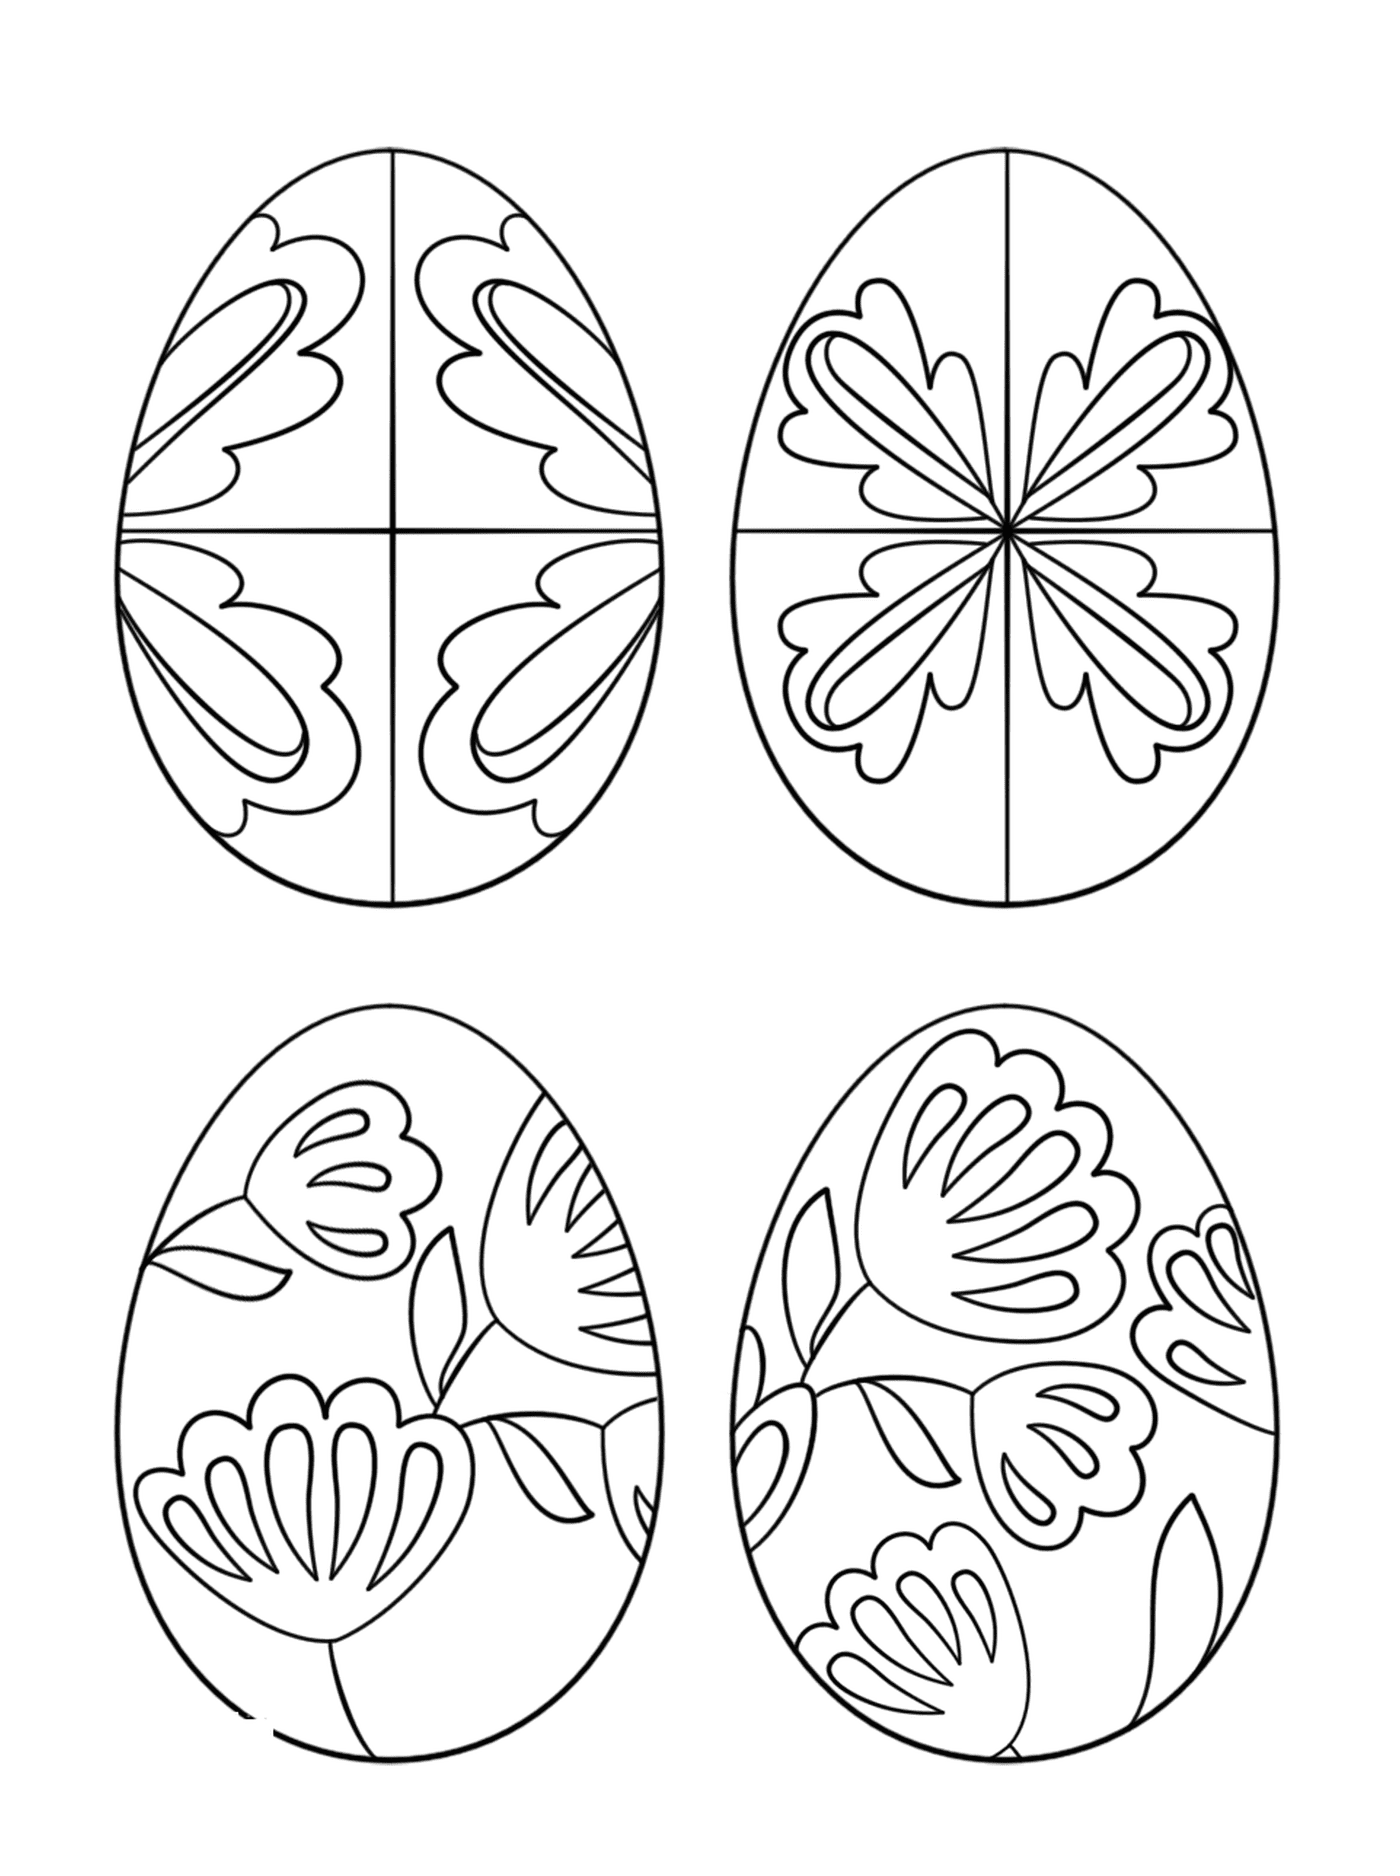  Ovos pisanky, um conjunto de ovos de Páscoa decorados com diferentes padrões 